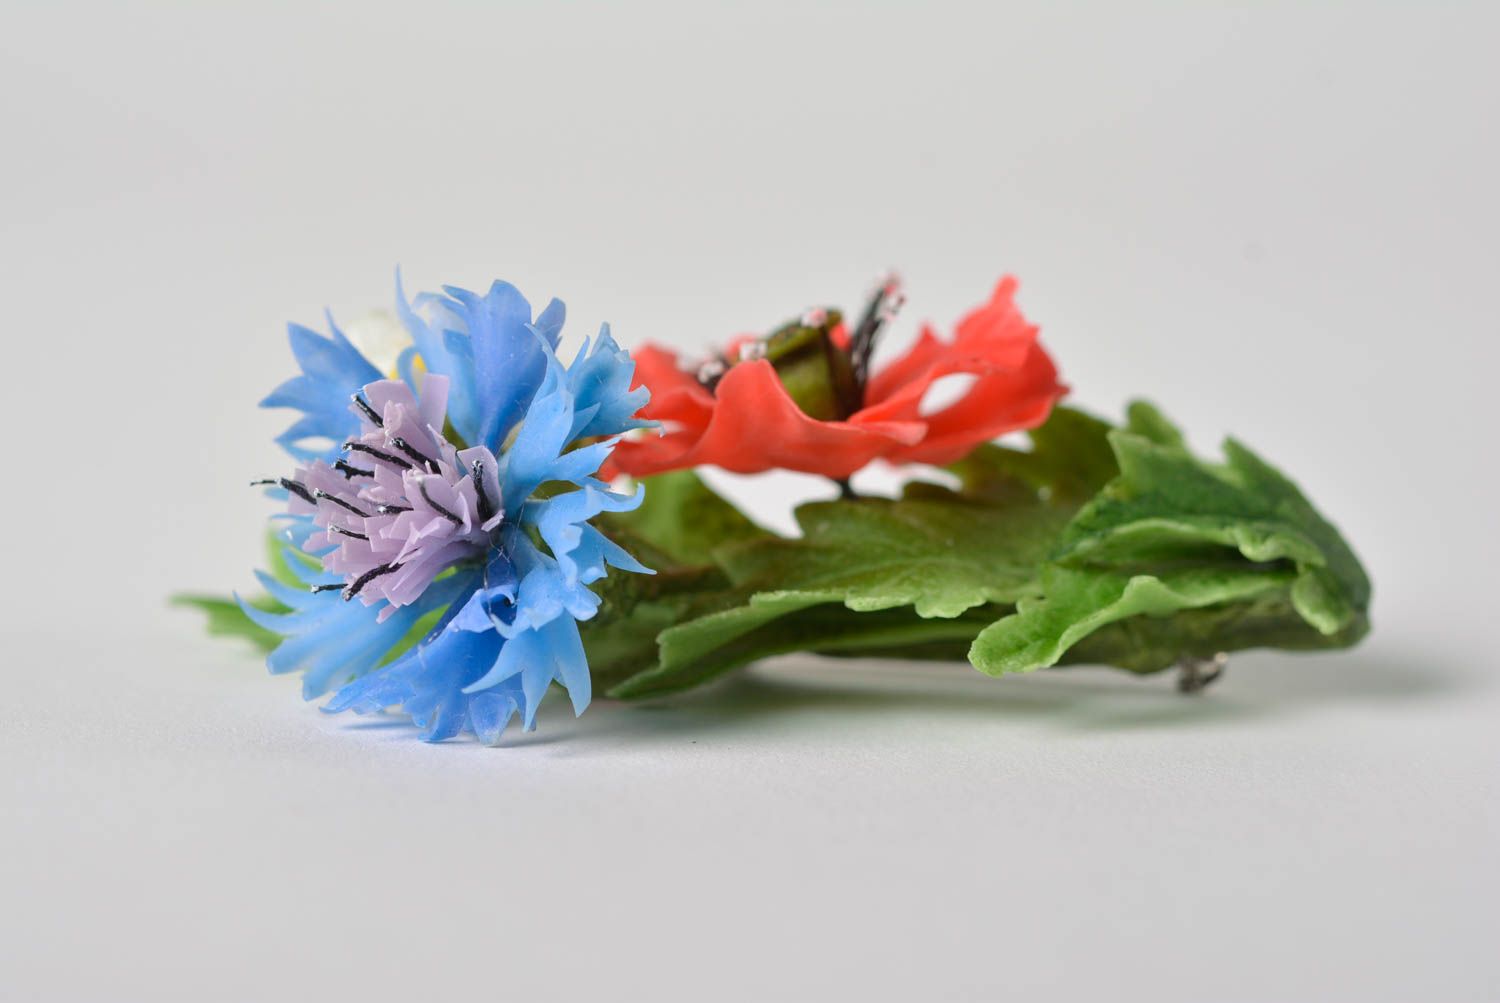 Брошь с цветами из полимерной глины небольшая яркая красивая ручной работы фото 2